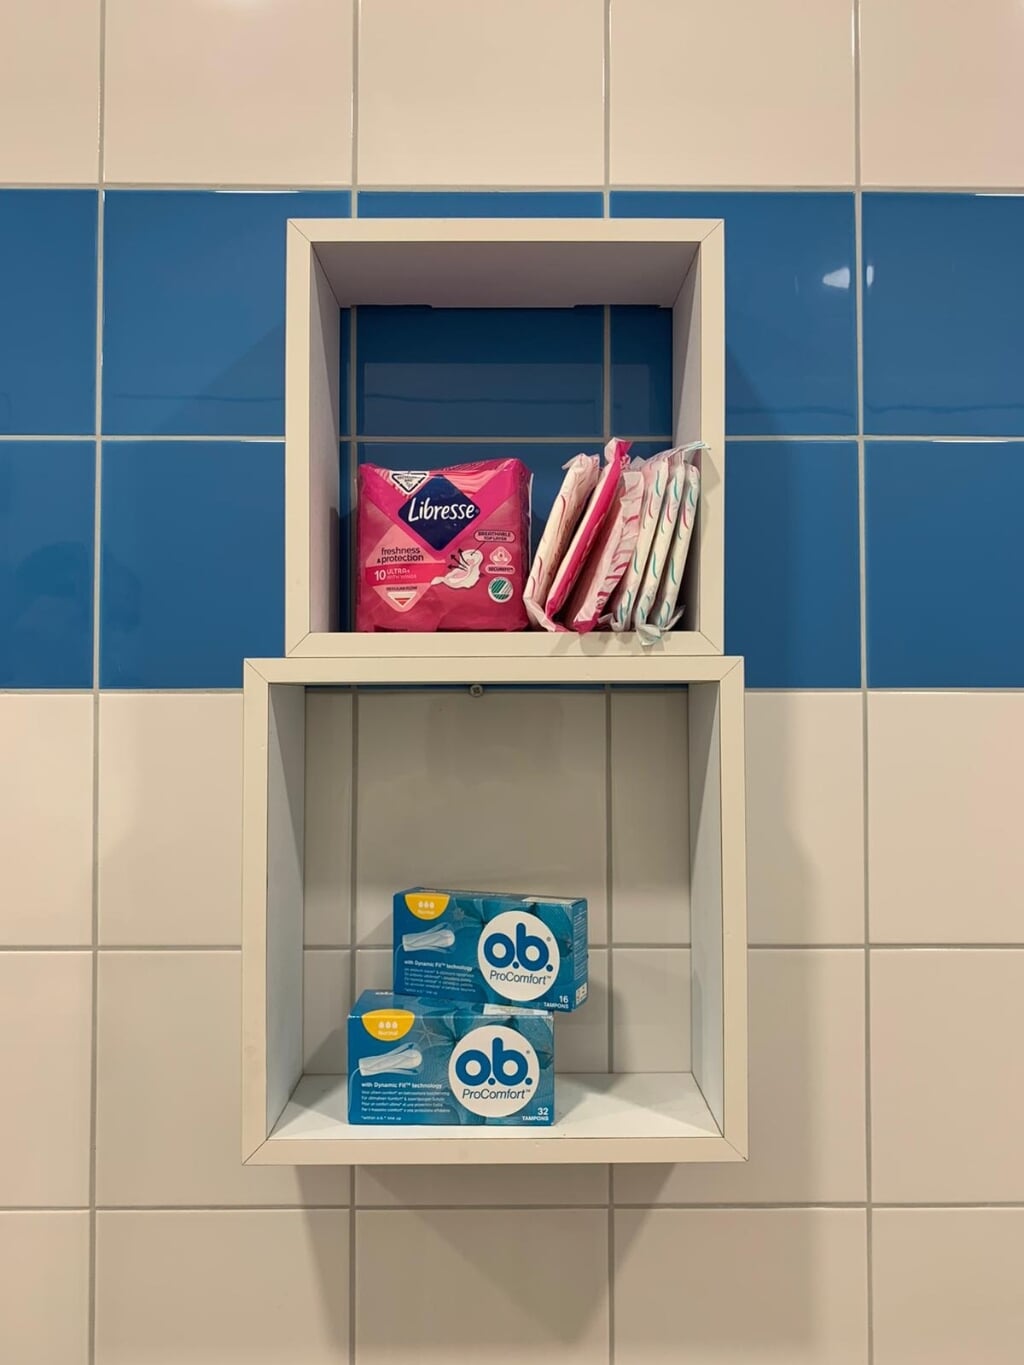 Op CHE komen kastjes in de wc's waar studenten gratis tampons of maandverband kunnen pakken.